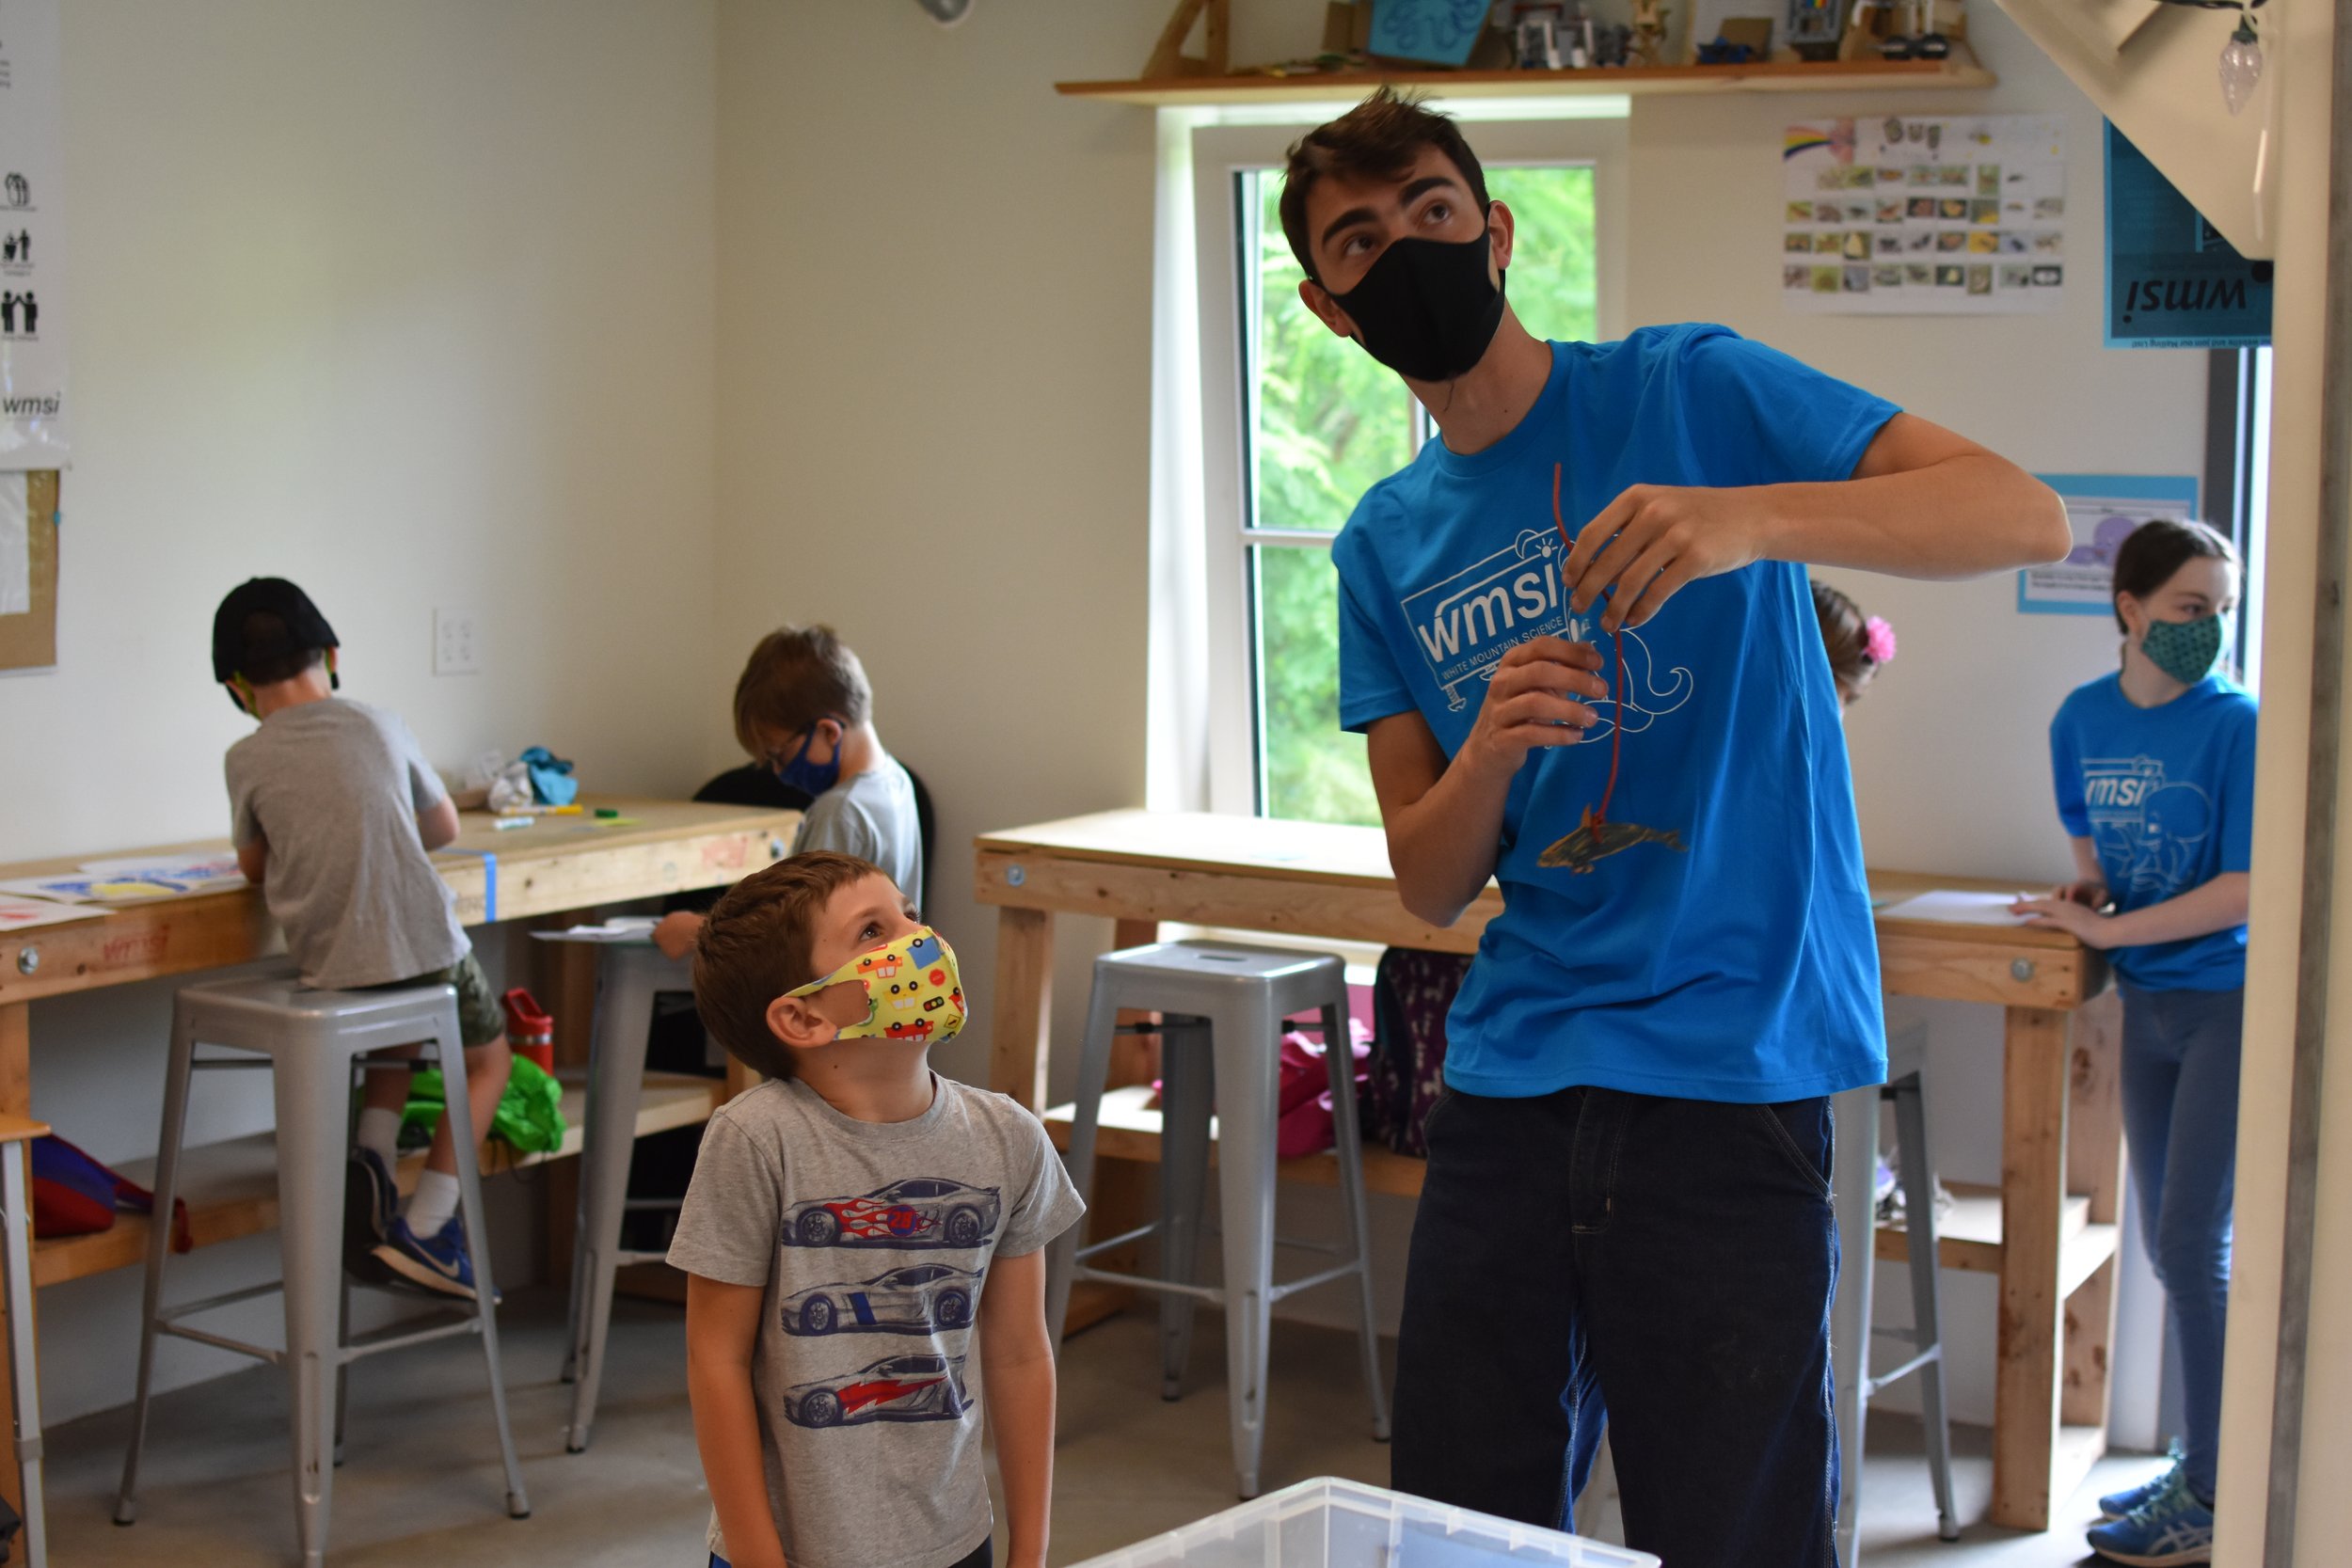  A WMSI Blue Shirt helps a student hang up a paper creation 